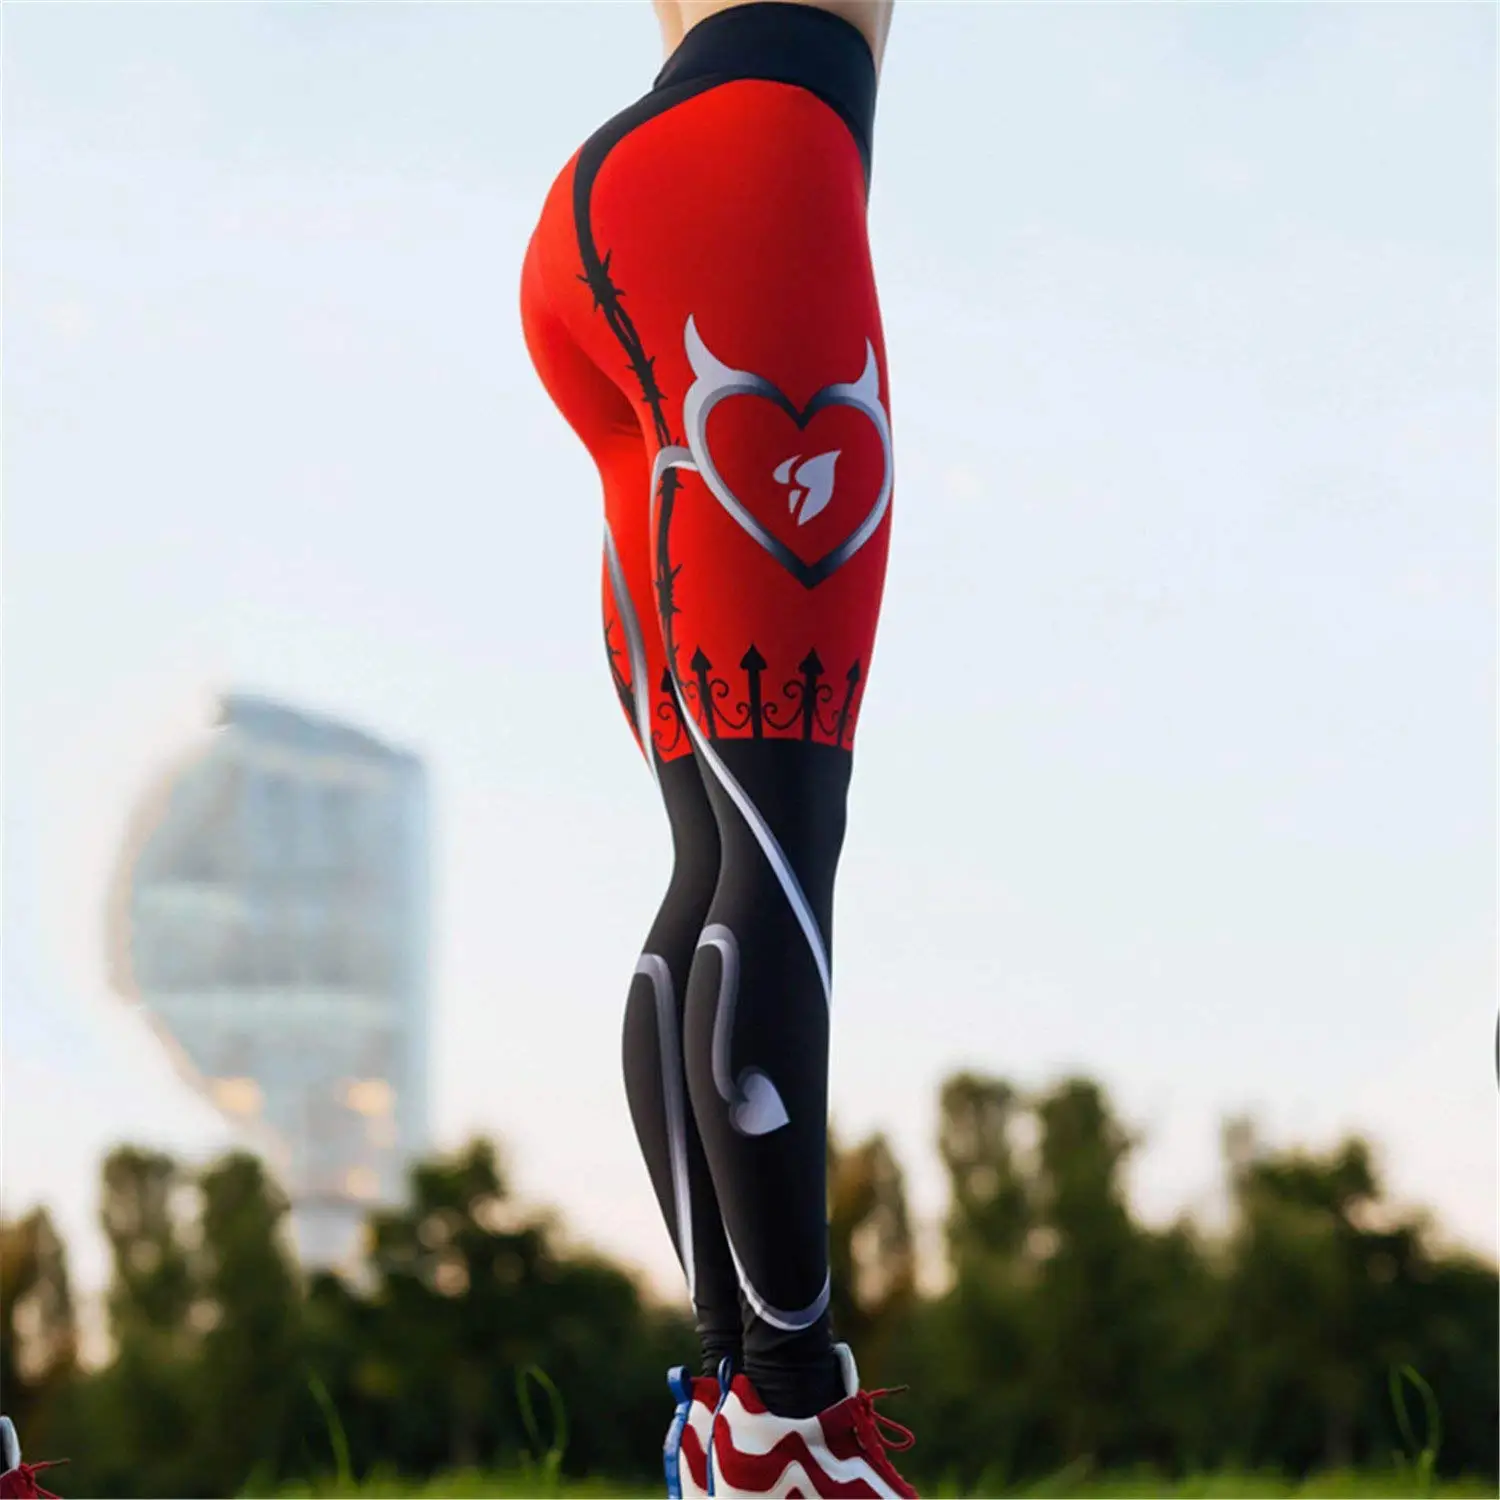 LI-FI штаны для фитнеса и йоги с красным сердцем, спортивные Леггинсы, женские штаны, одежда для тренировок, спортивные Леггинсы для бега, эластичные обтягивающие штаны с эффектом пуш-ап